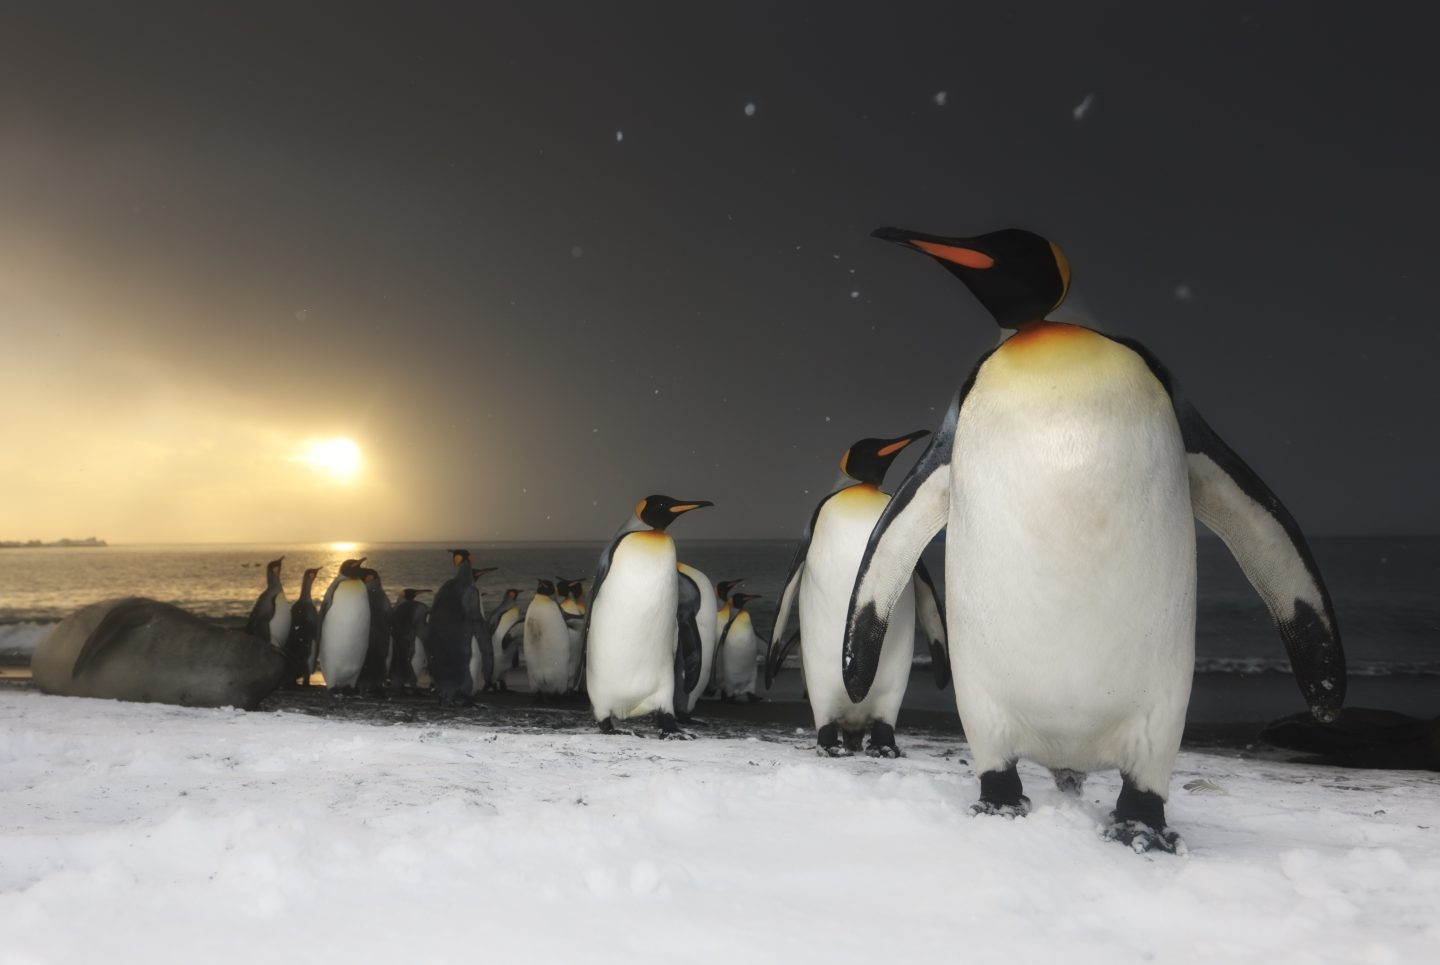 Pingüinos rey, isla del sur de Georgia, océano del Sur.Antártida.